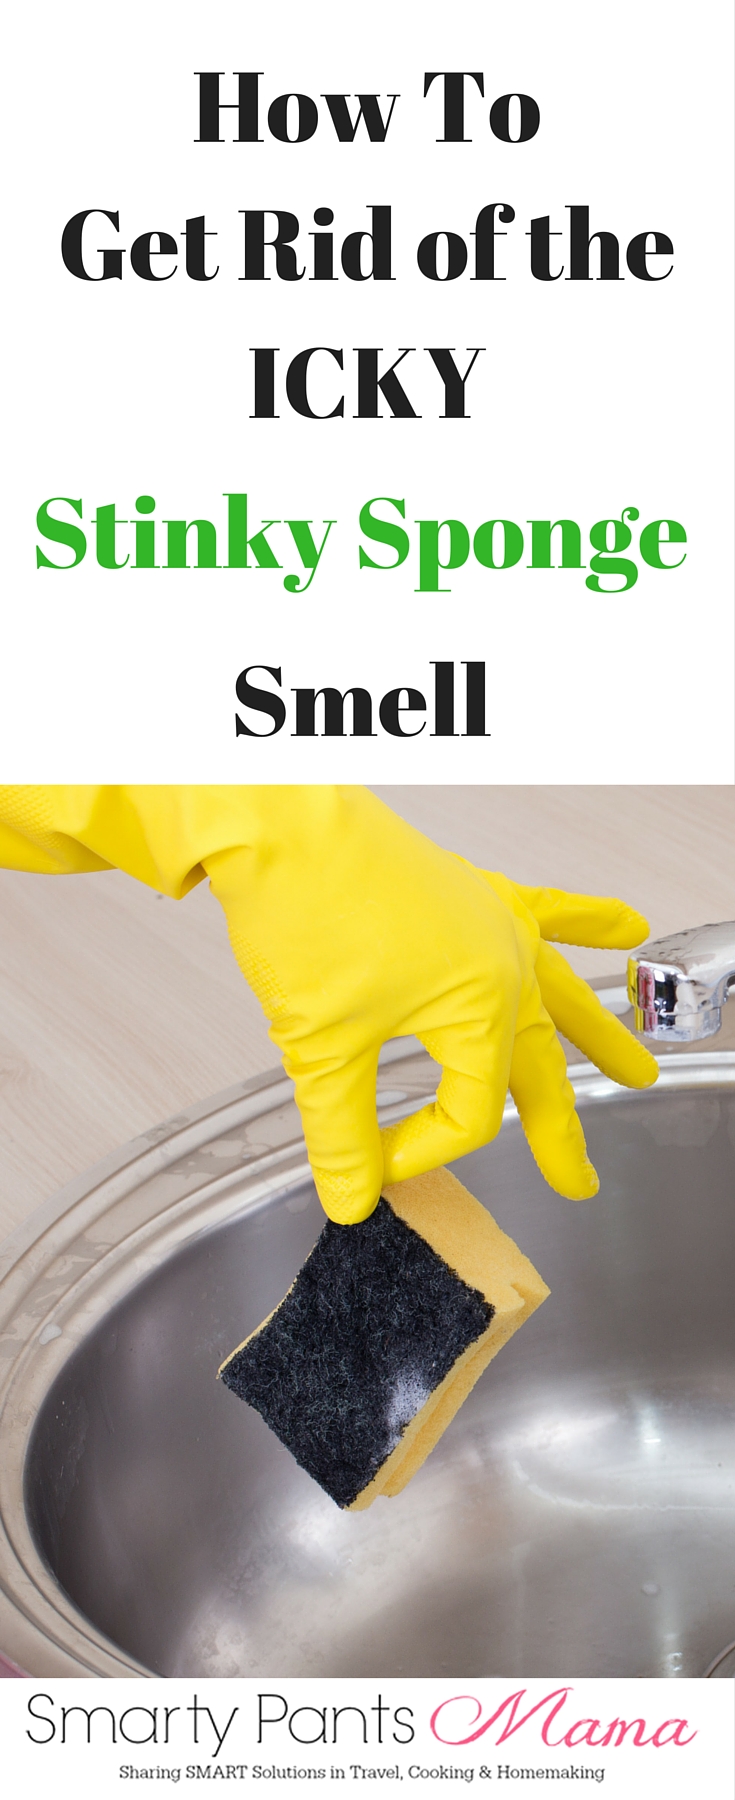 Stinky Sponge